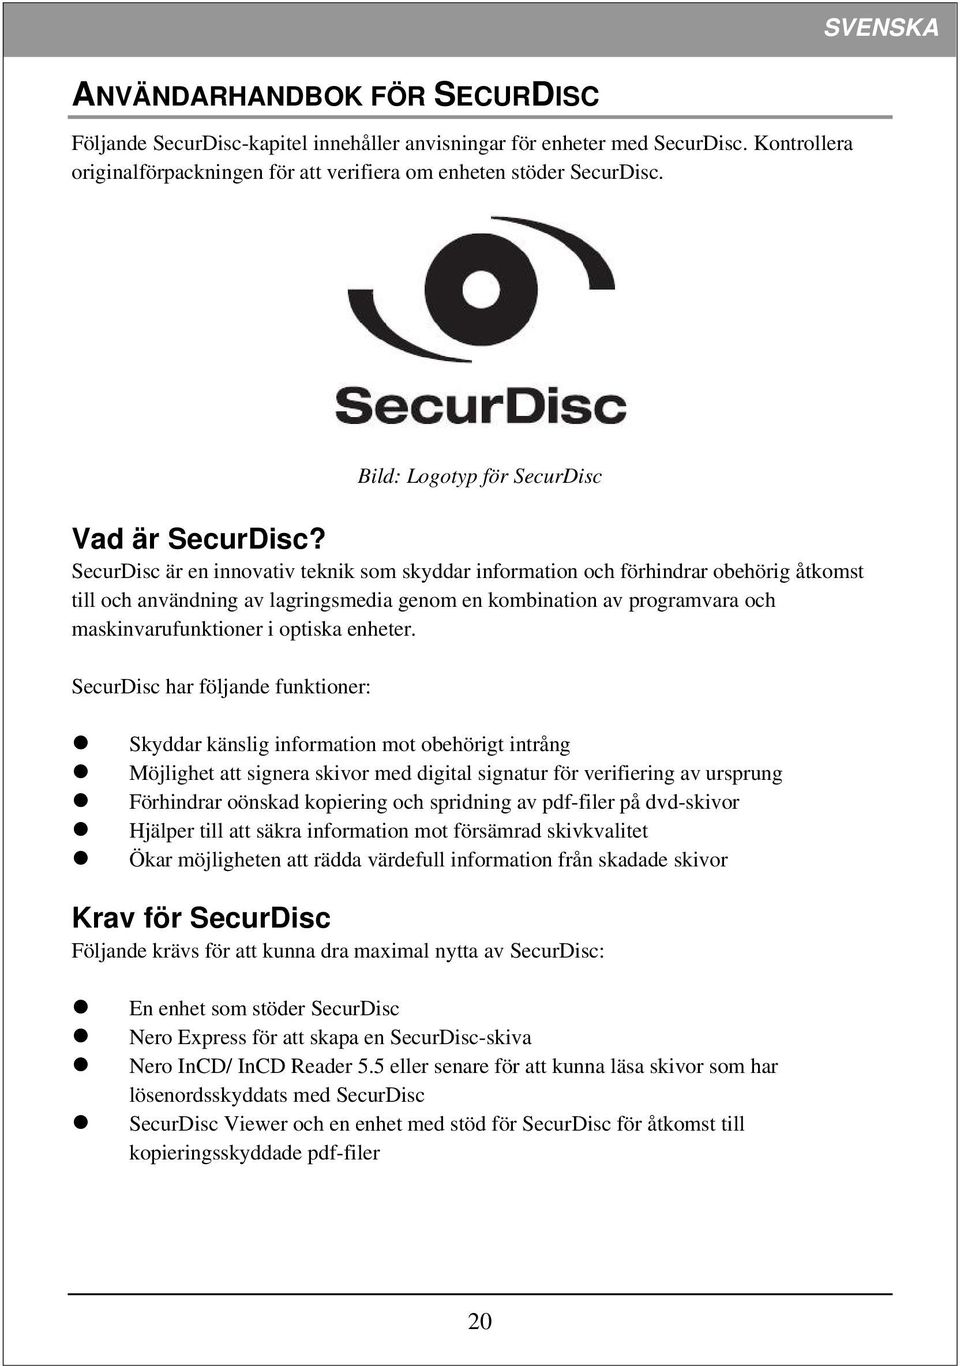 SecurDisc är en innovativ teknik som skyddar information och förhindrar obehörig åtkomst till och användning av lagringsmedia genom en kombination av programvara och maskinvarufunktioner i optiska